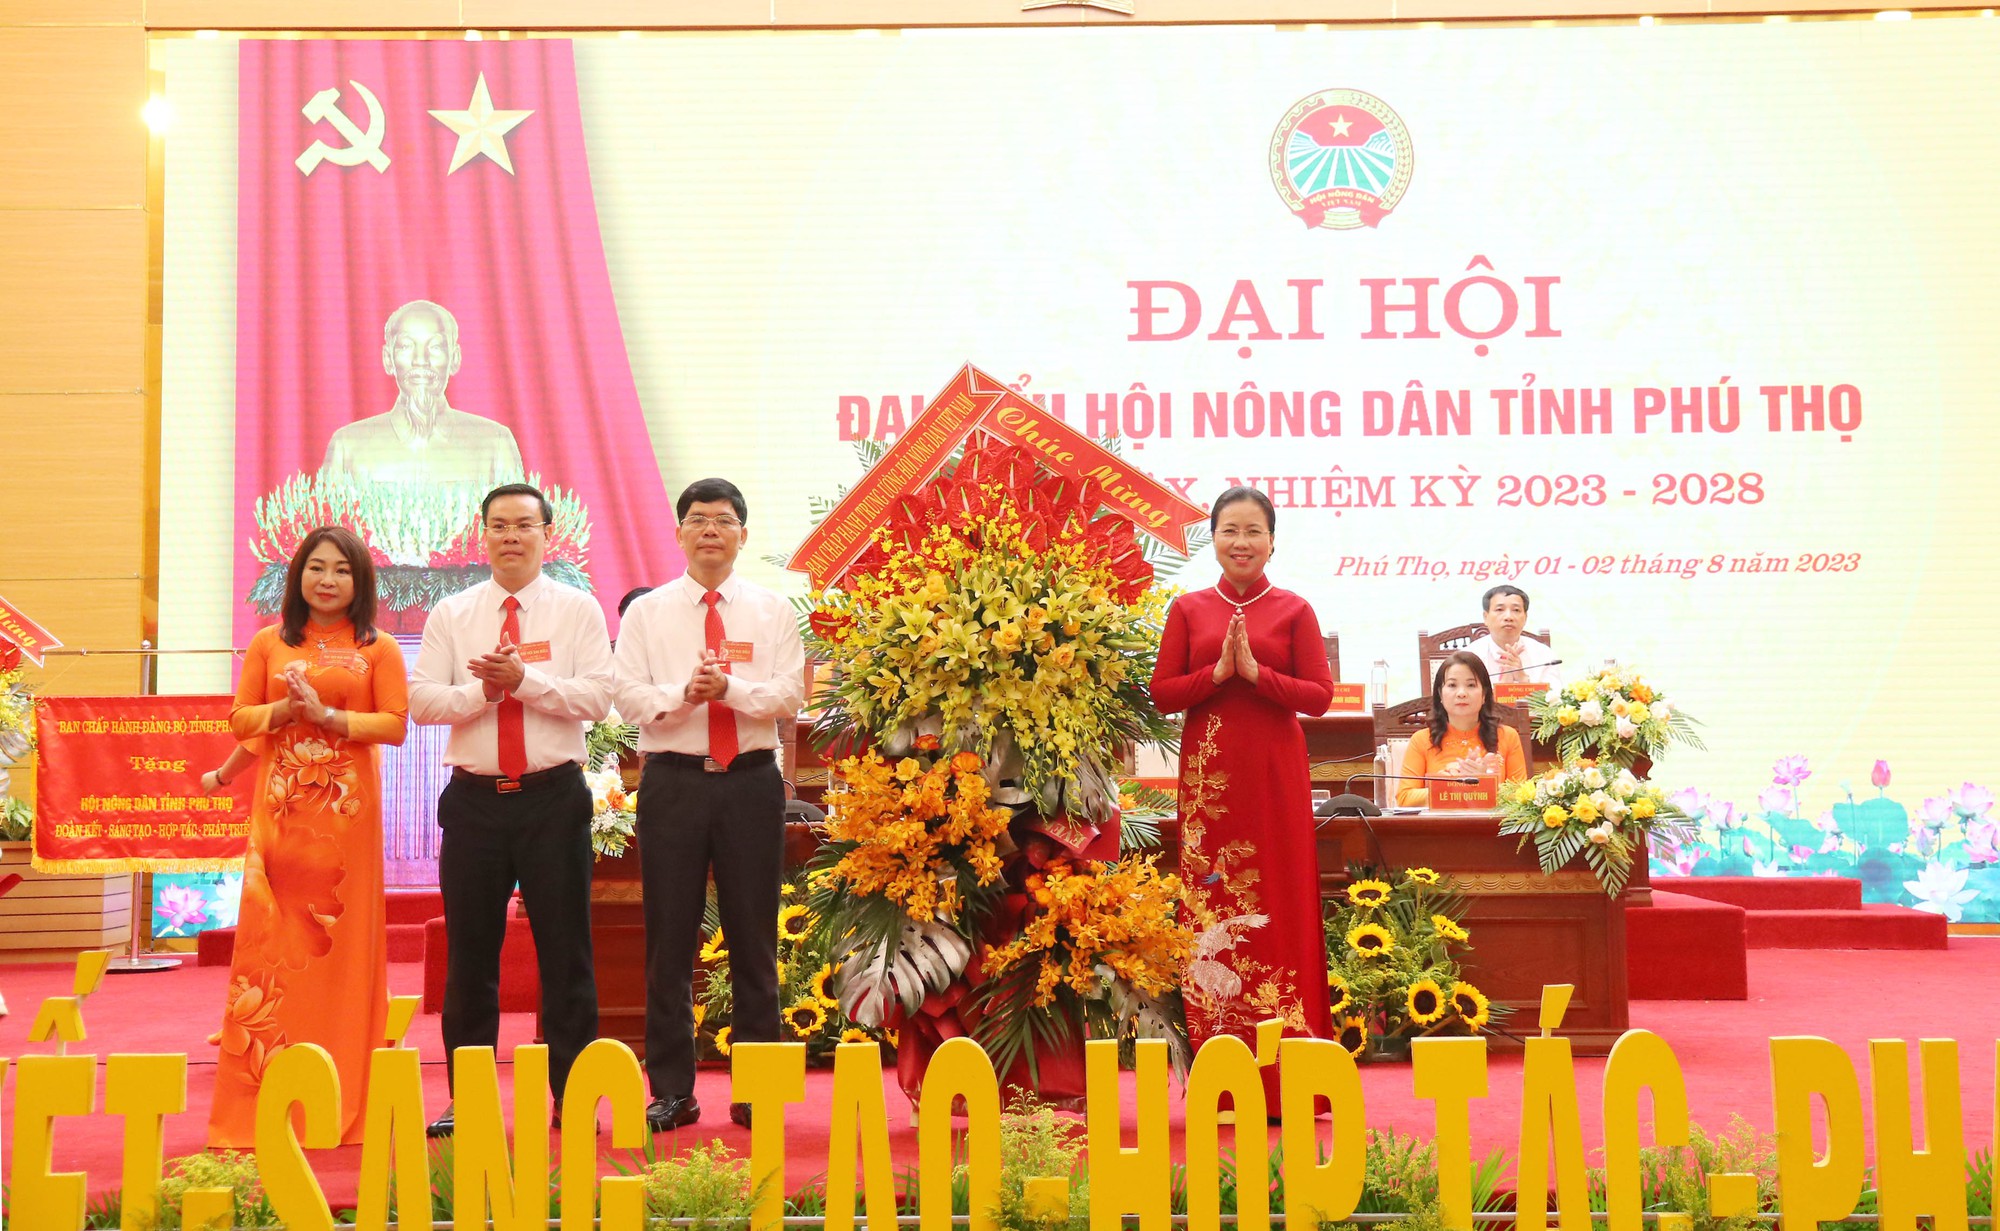 Phó Chủ tịch Hội NDVN Bùi Thị Thơm: Phú Thọ đi đầu kết nạp hội viên mới là nhà khoa học, sinh viên - Ảnh 2.